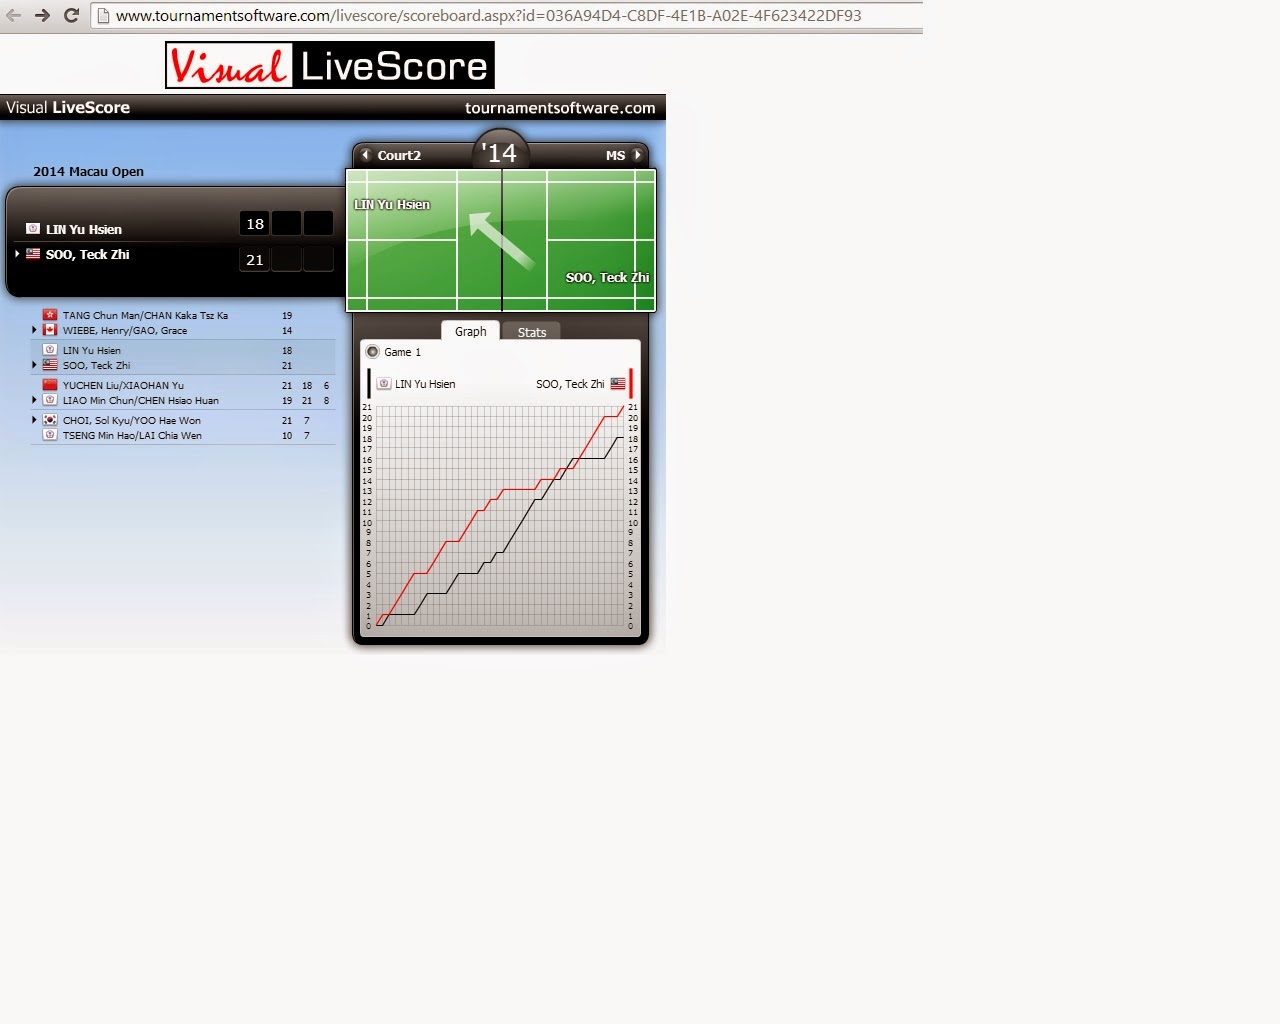 Tournament Software Badminton Livescore Best Sale